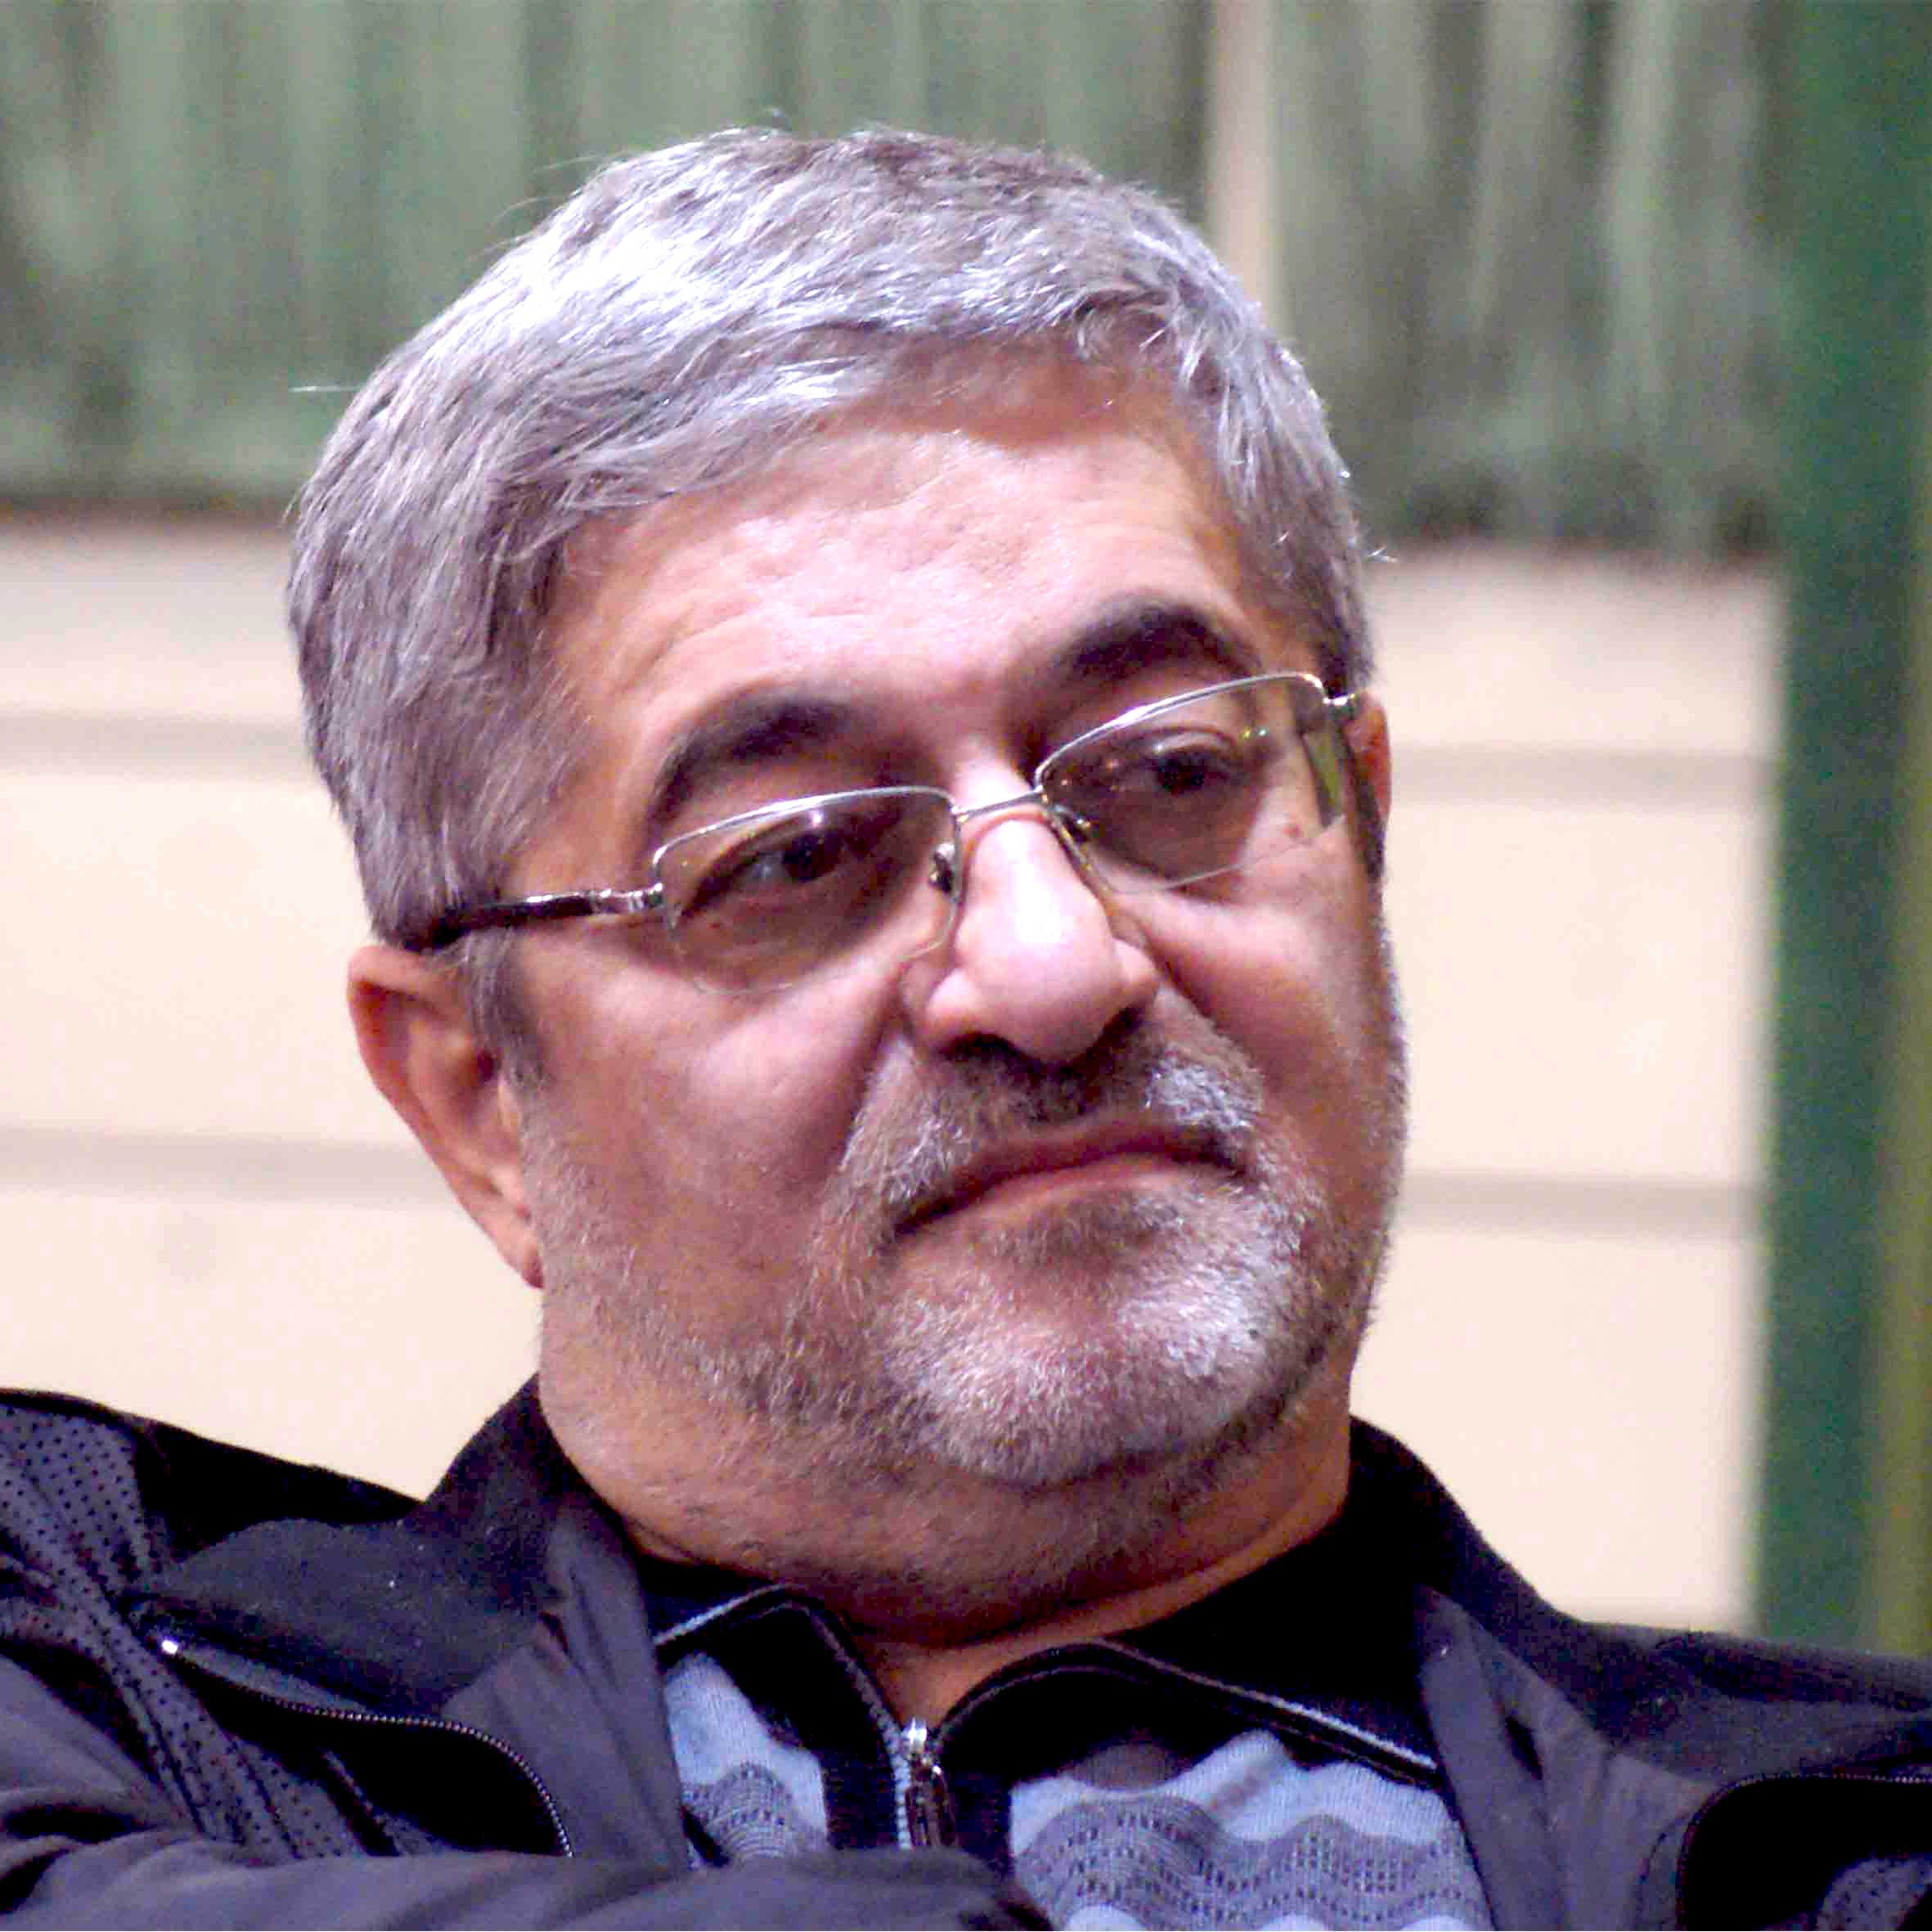 بهمن شاهمرادی، دبیر فیزیک پایه 12